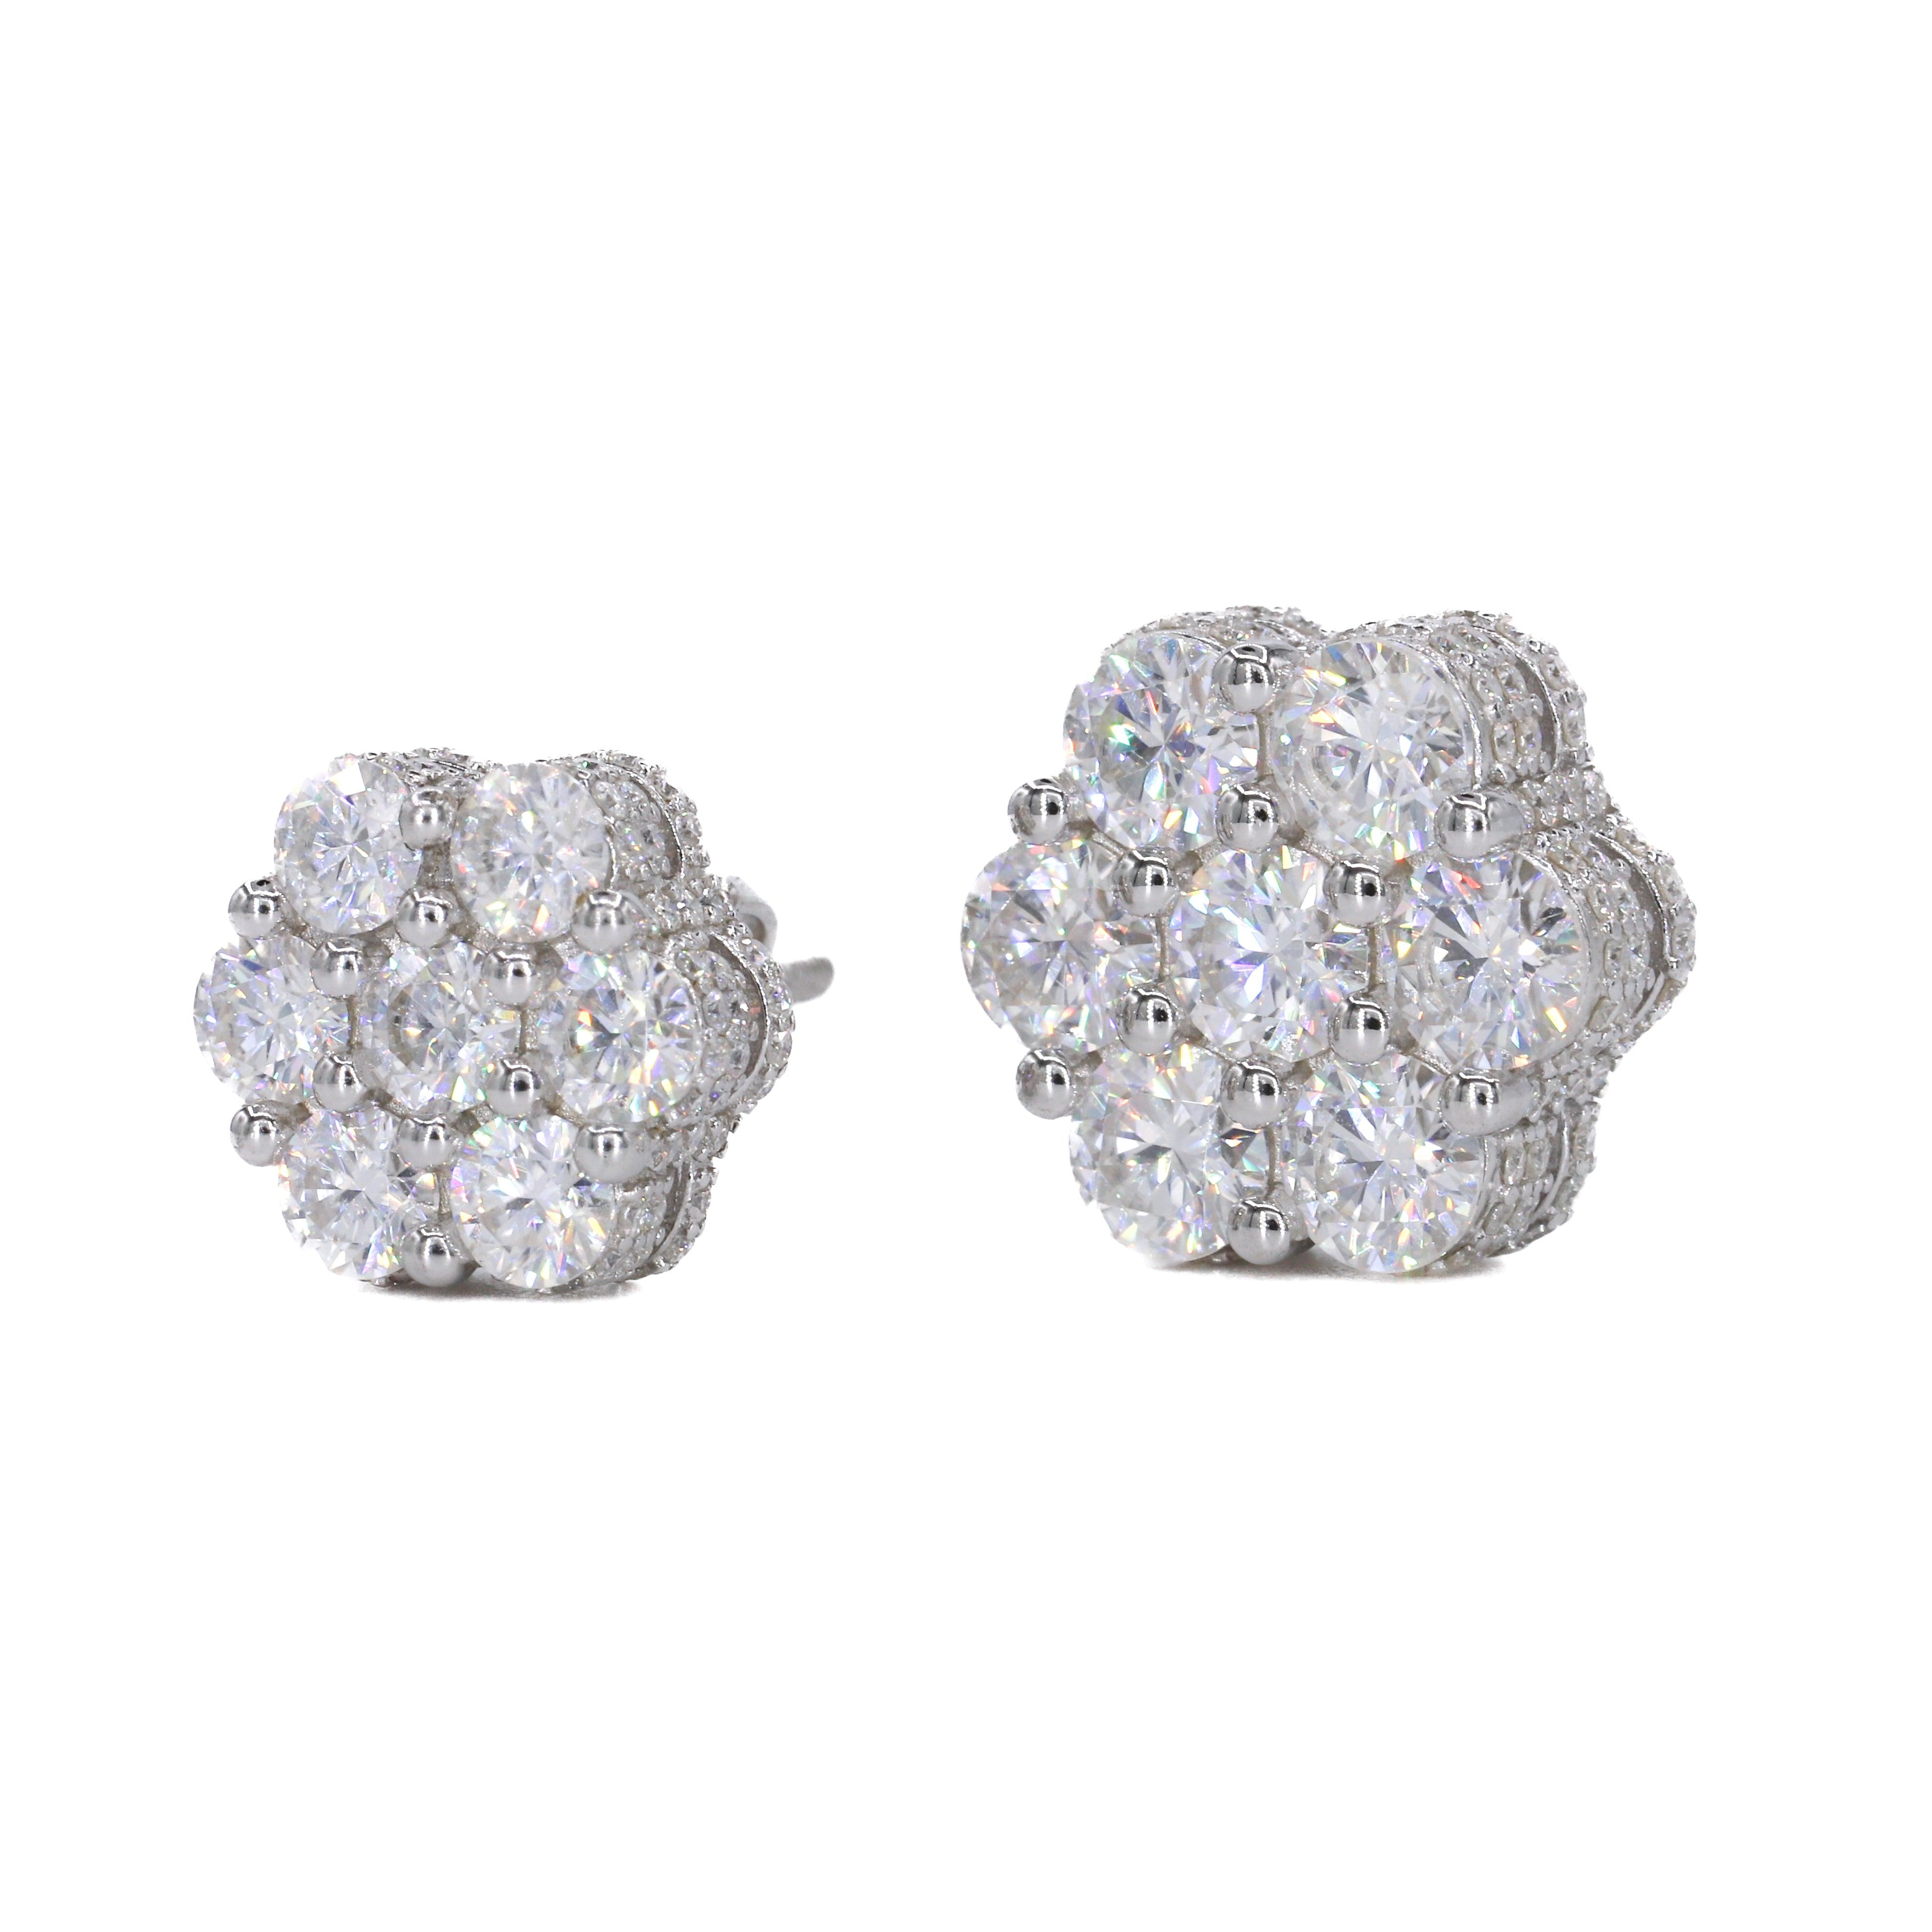 BIG STONE Flower Earring Fully Iced Out VVS Moissanite Daimond Earrings - Moissanite Bazaar - moissanitebazaar.com